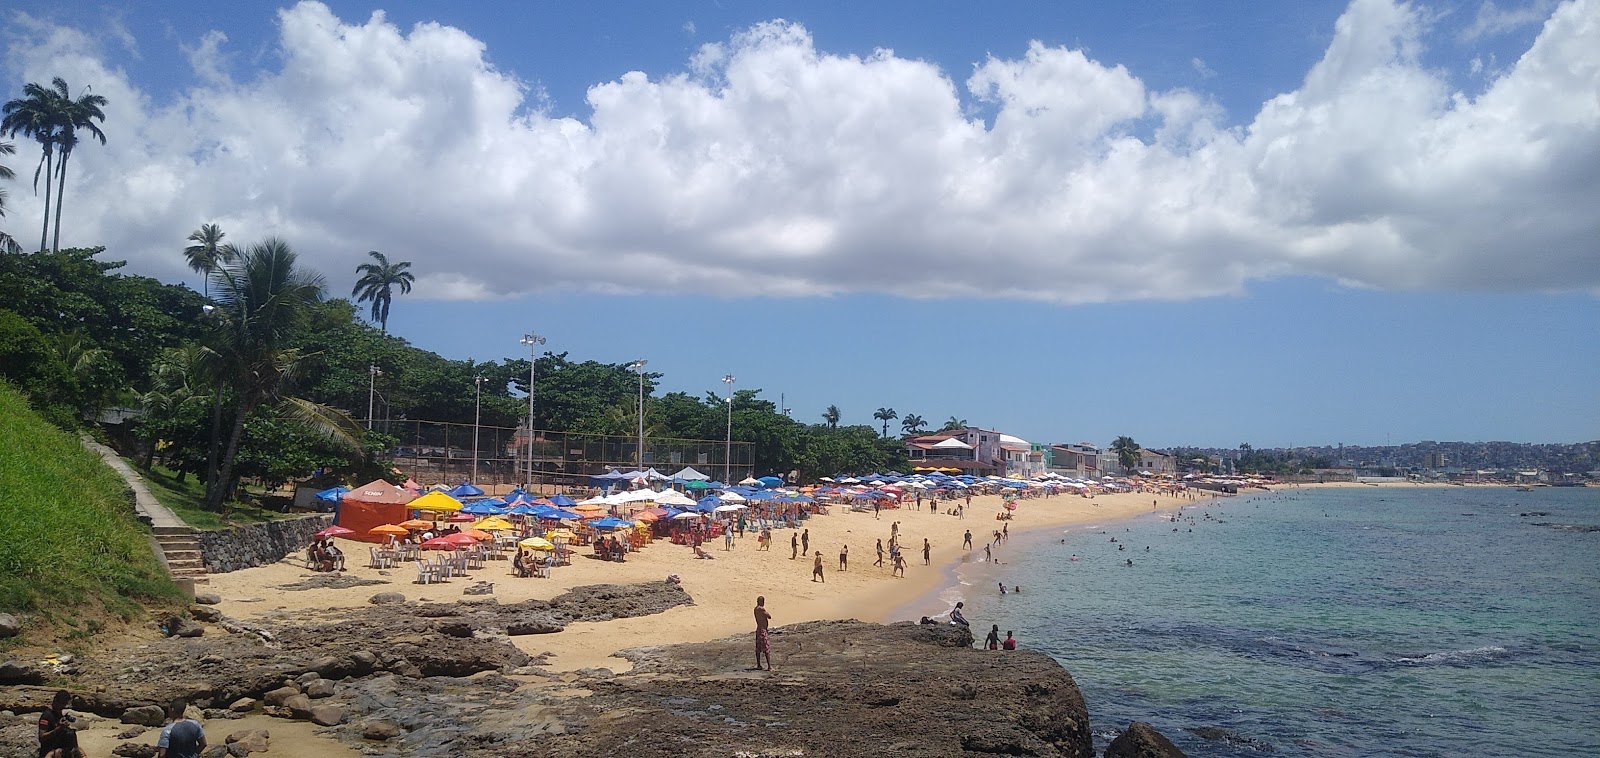 Fotografie cu Praia da Boa Viagem - locul popular printre cunoscătorii de relaxare